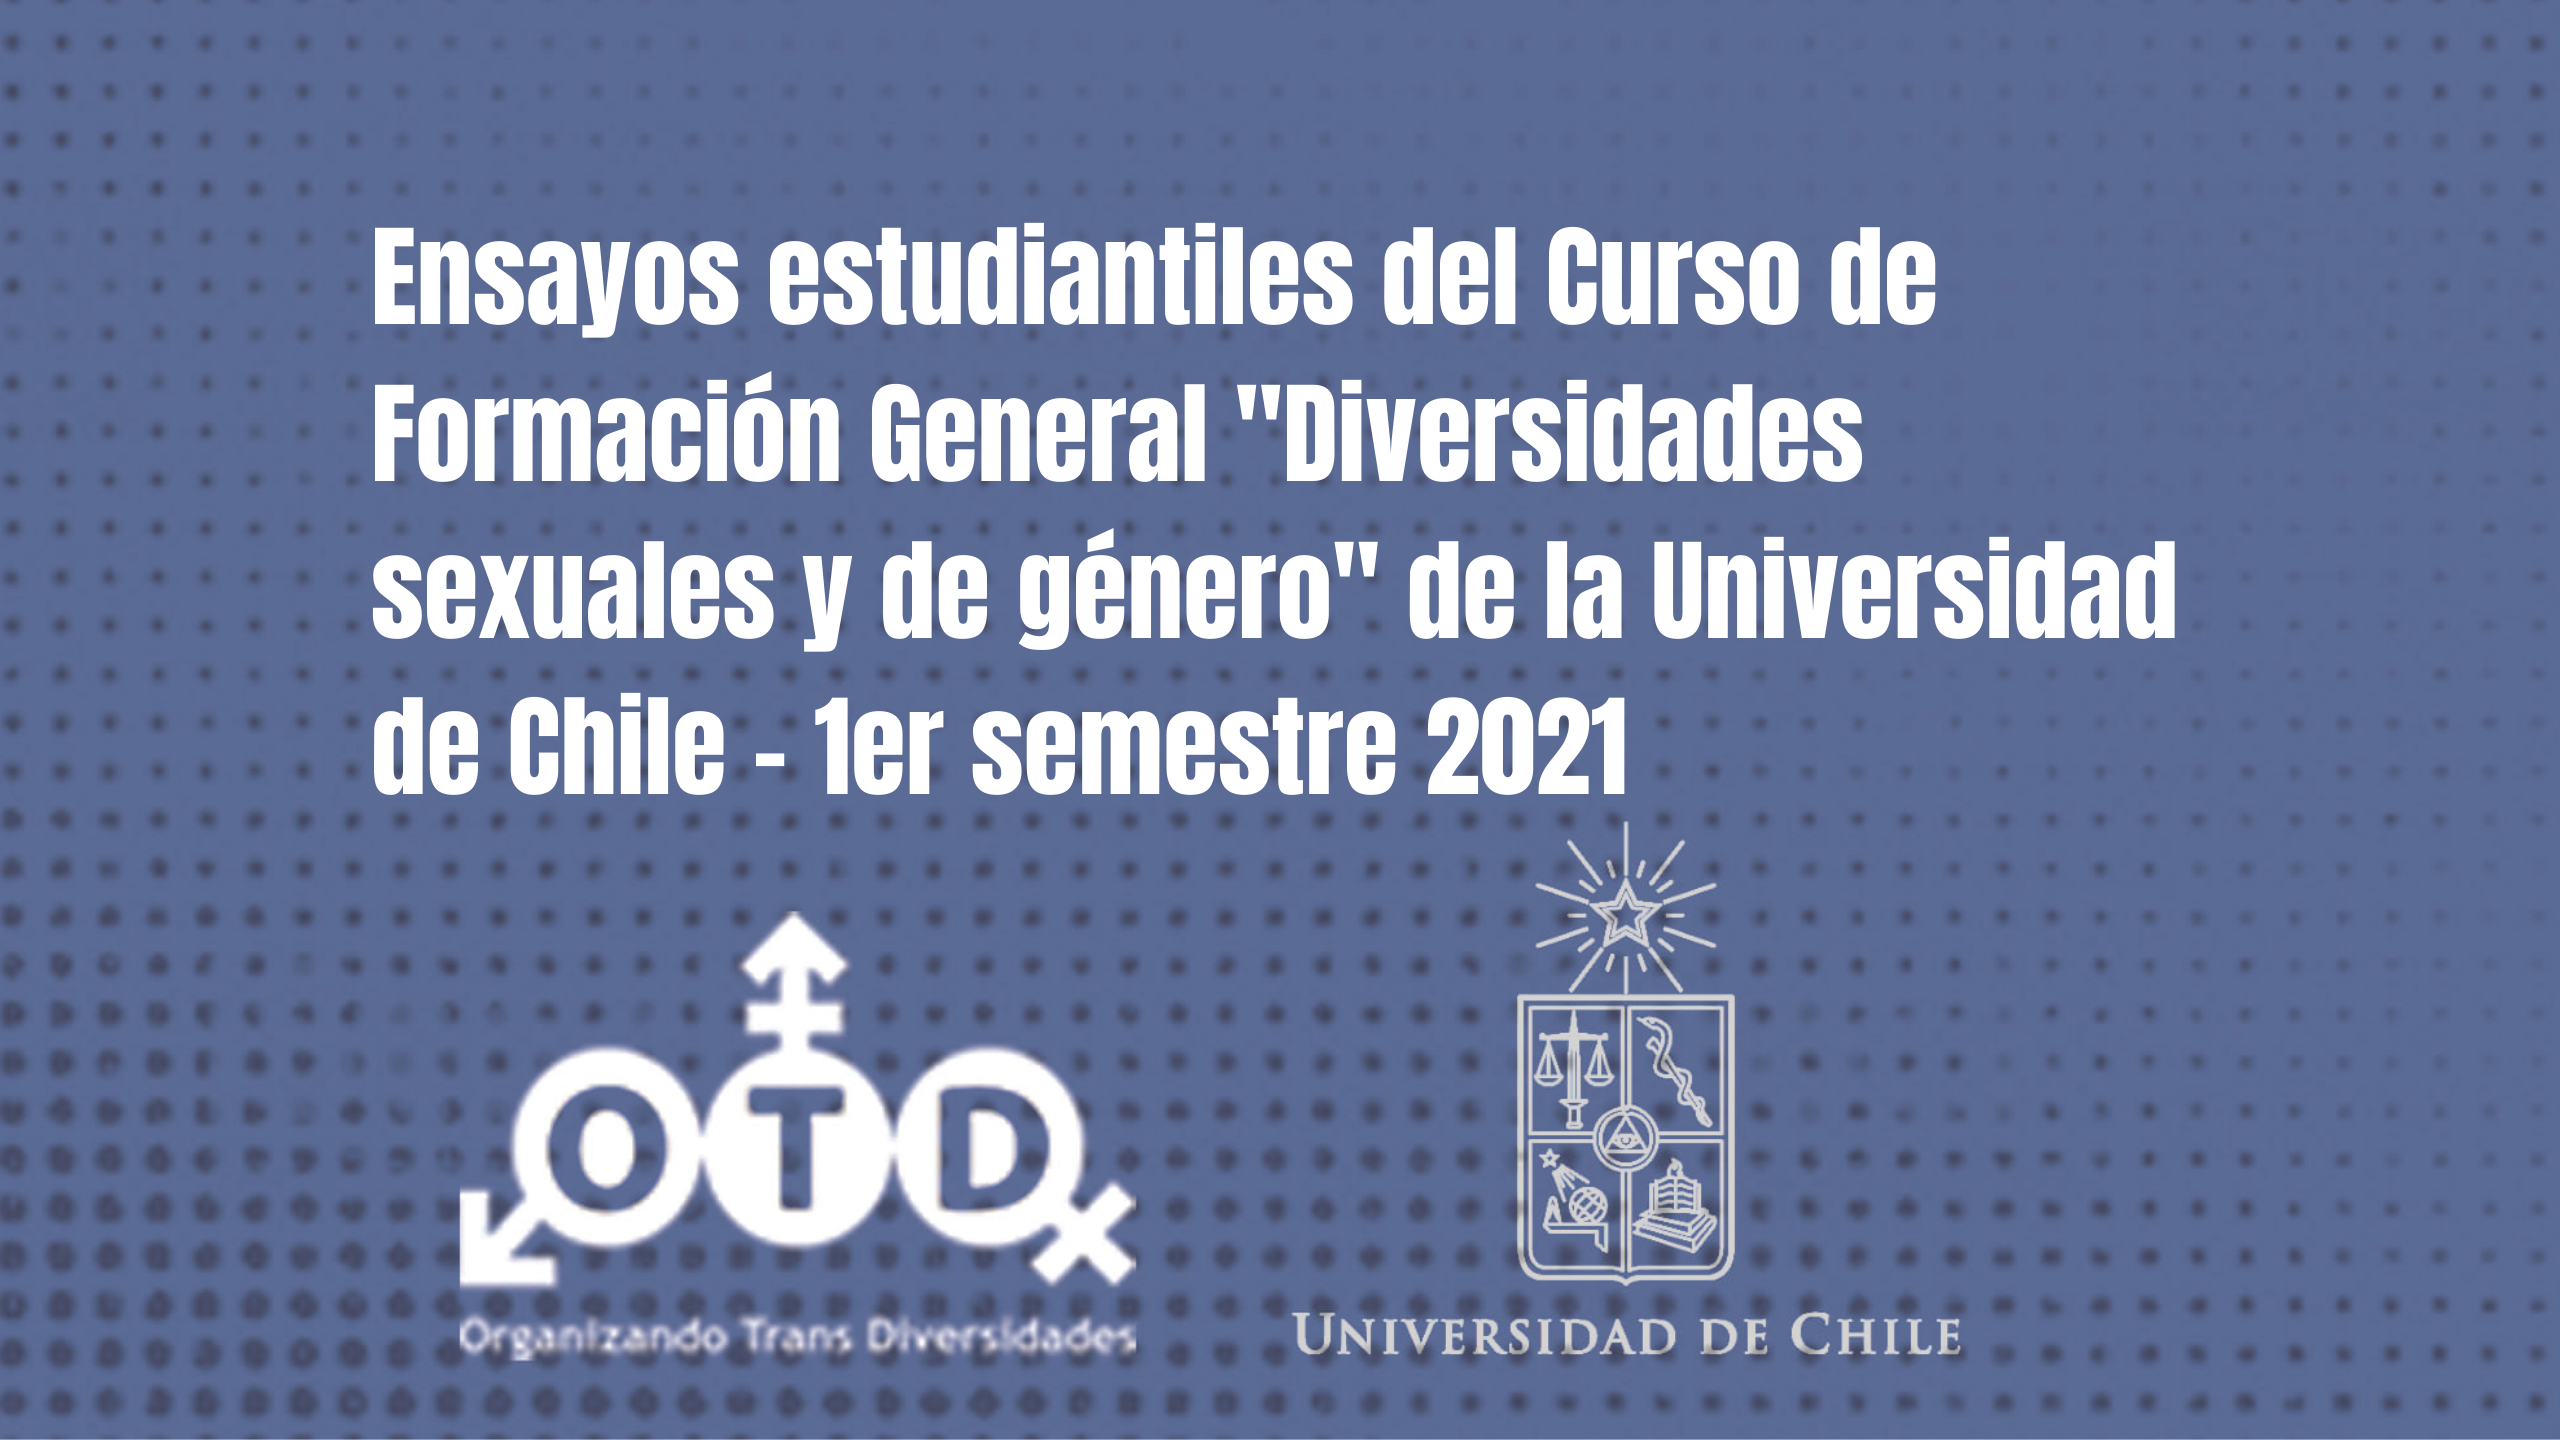 Ensayos estudiantiles del Curso de Formación General “Diversidades sexuales y de género” de la Universidad de Chile – 1er semestre 2021